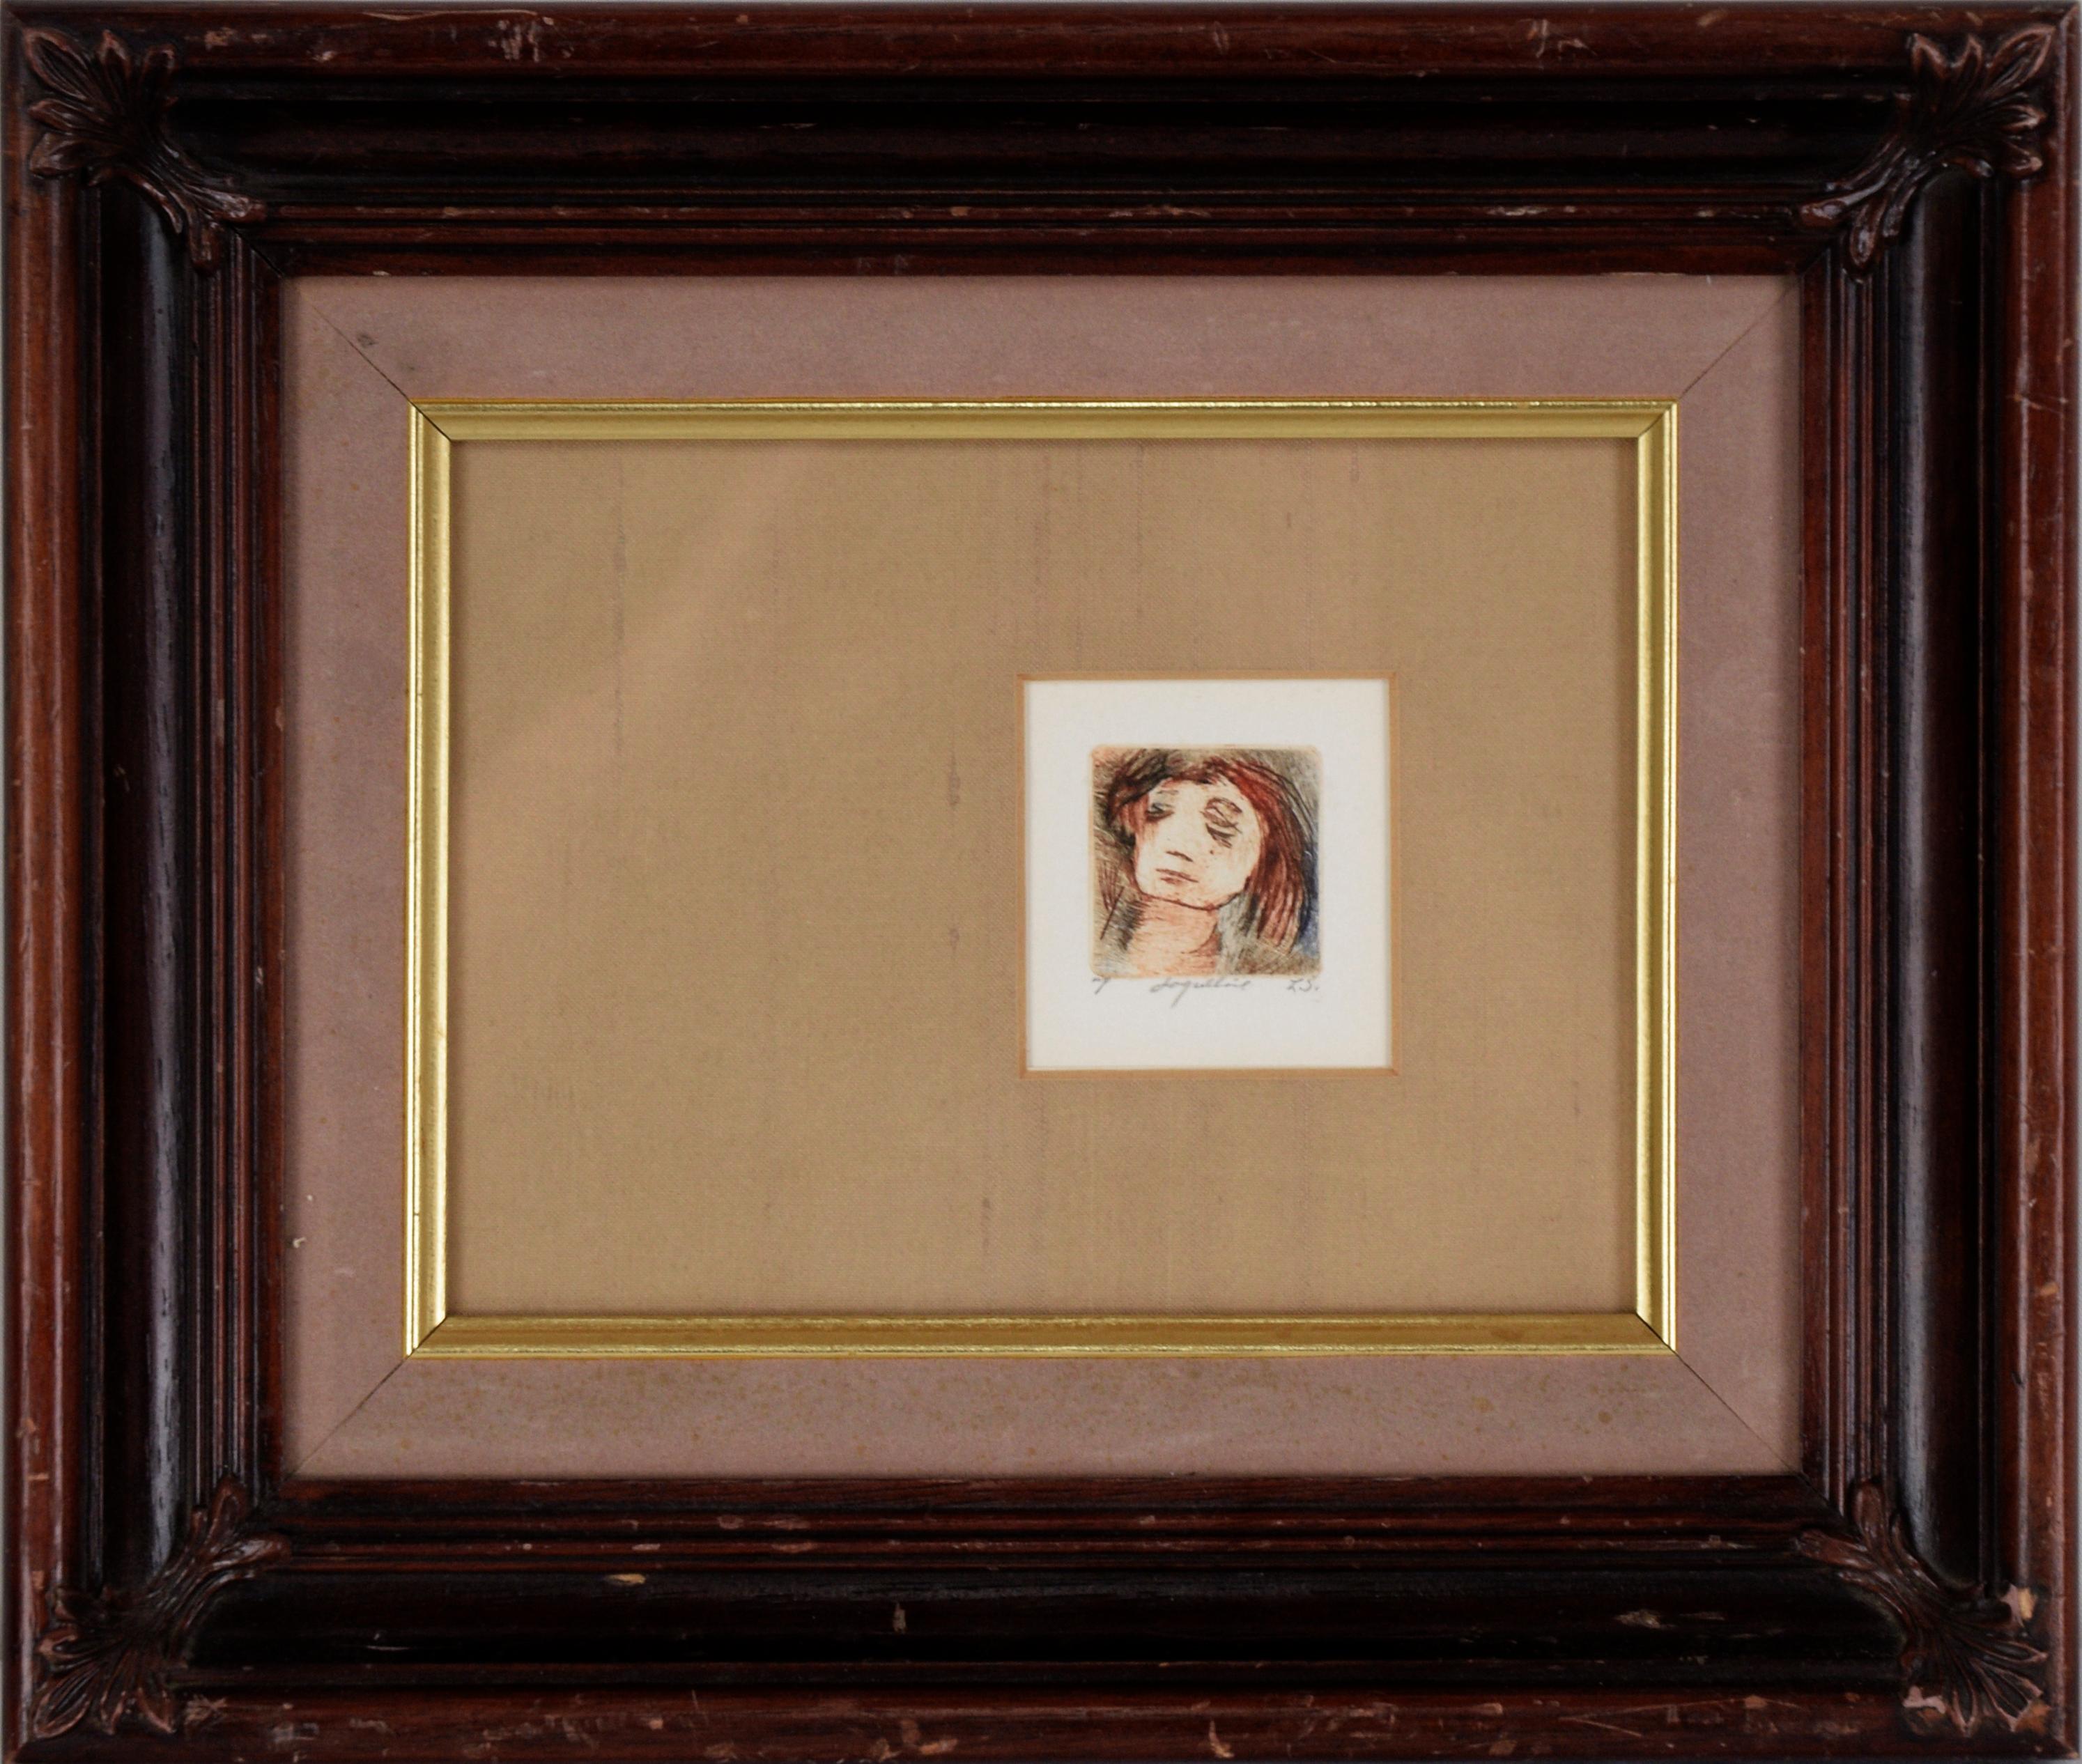 Unknown Portrait Print - "Jaqueline" Miniature Portrait - Etching on Paper (Artist's Proof)